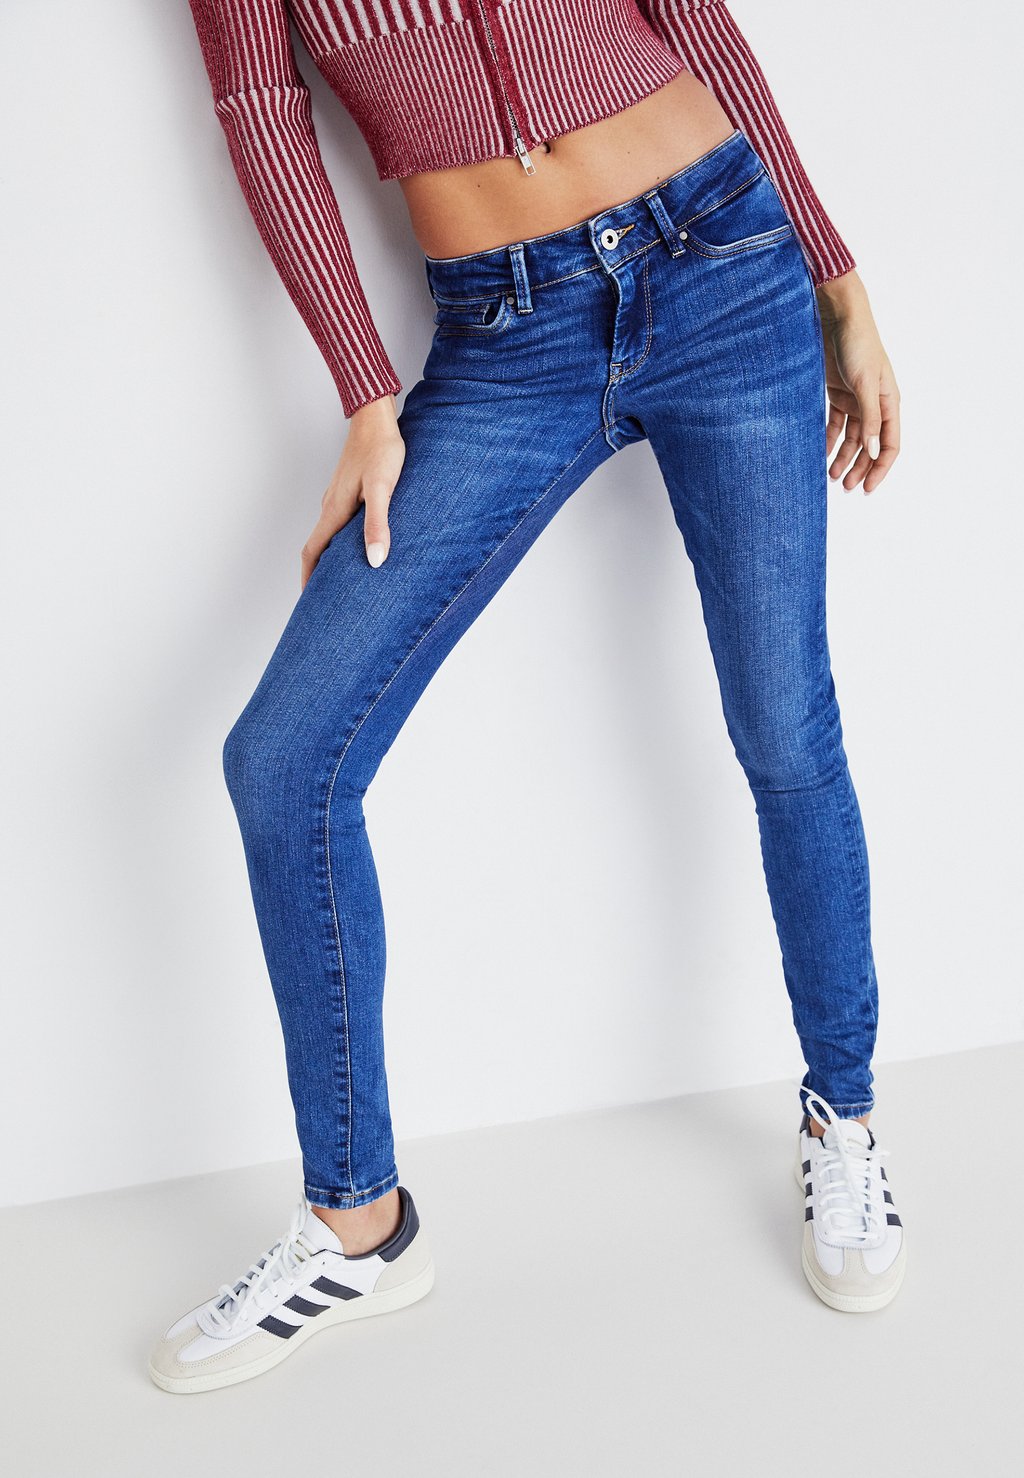 Джинсы Skinny Fit Pepe Jeans, цвет denim джинсы tapered fit gymdigo pepe jeans цвет denim